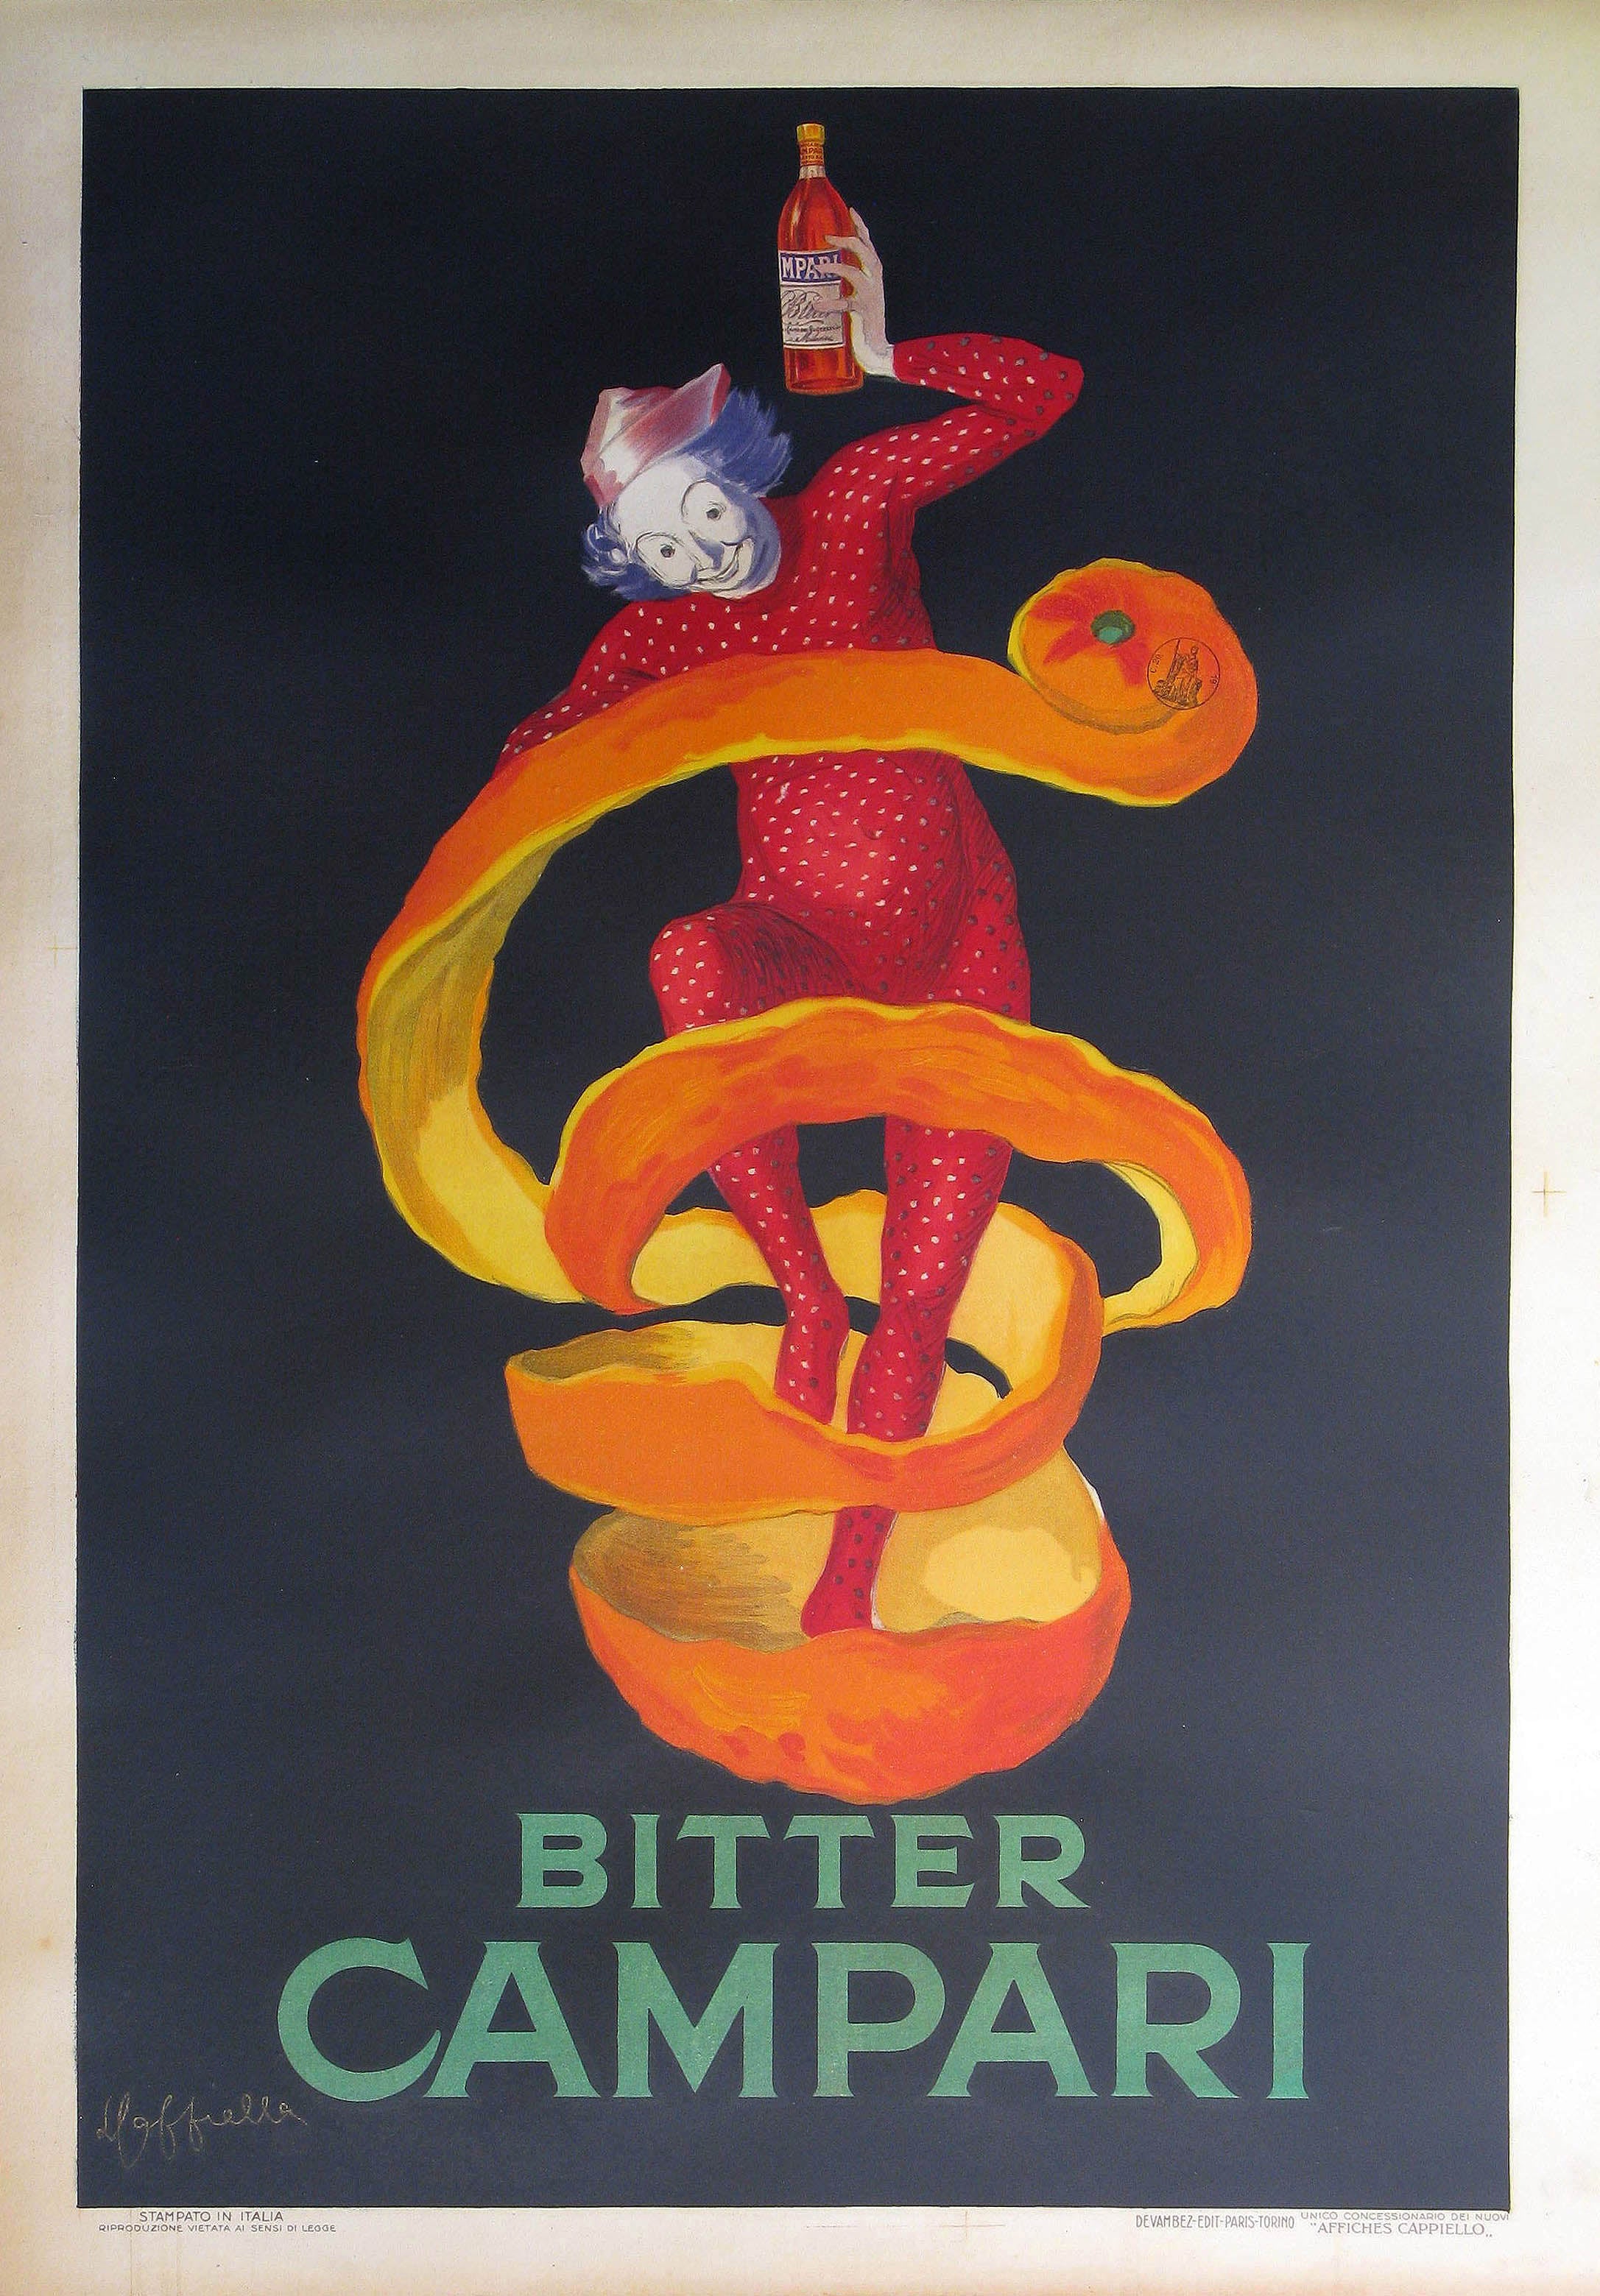 bitter campari poster by leonetto cappiello